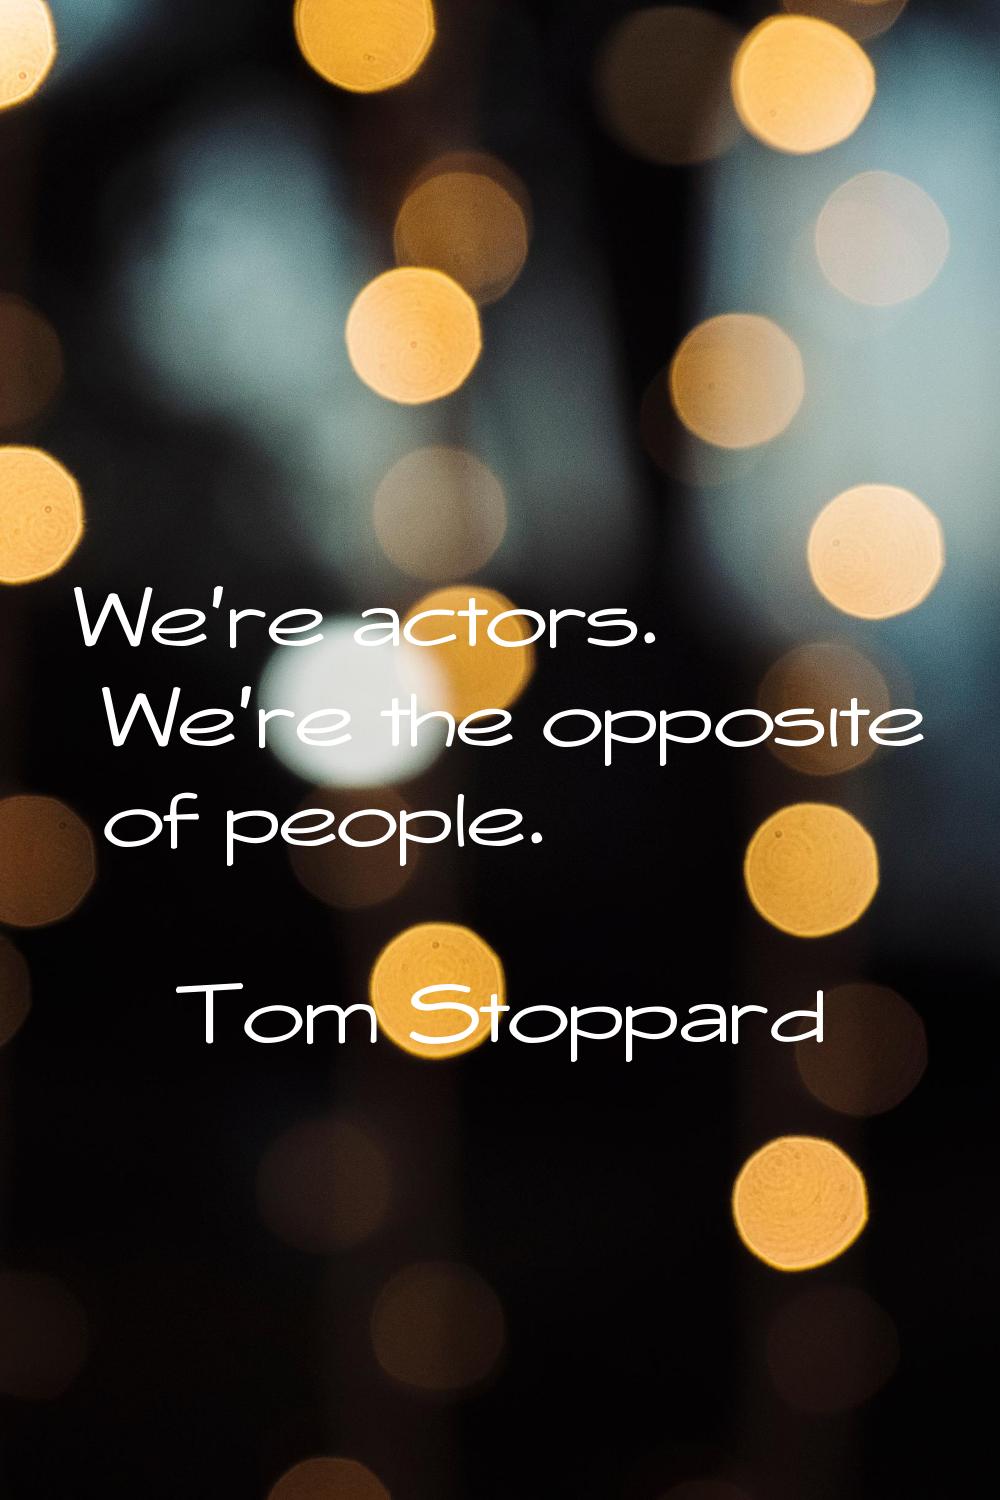 We're actors. We're the opposite of people.